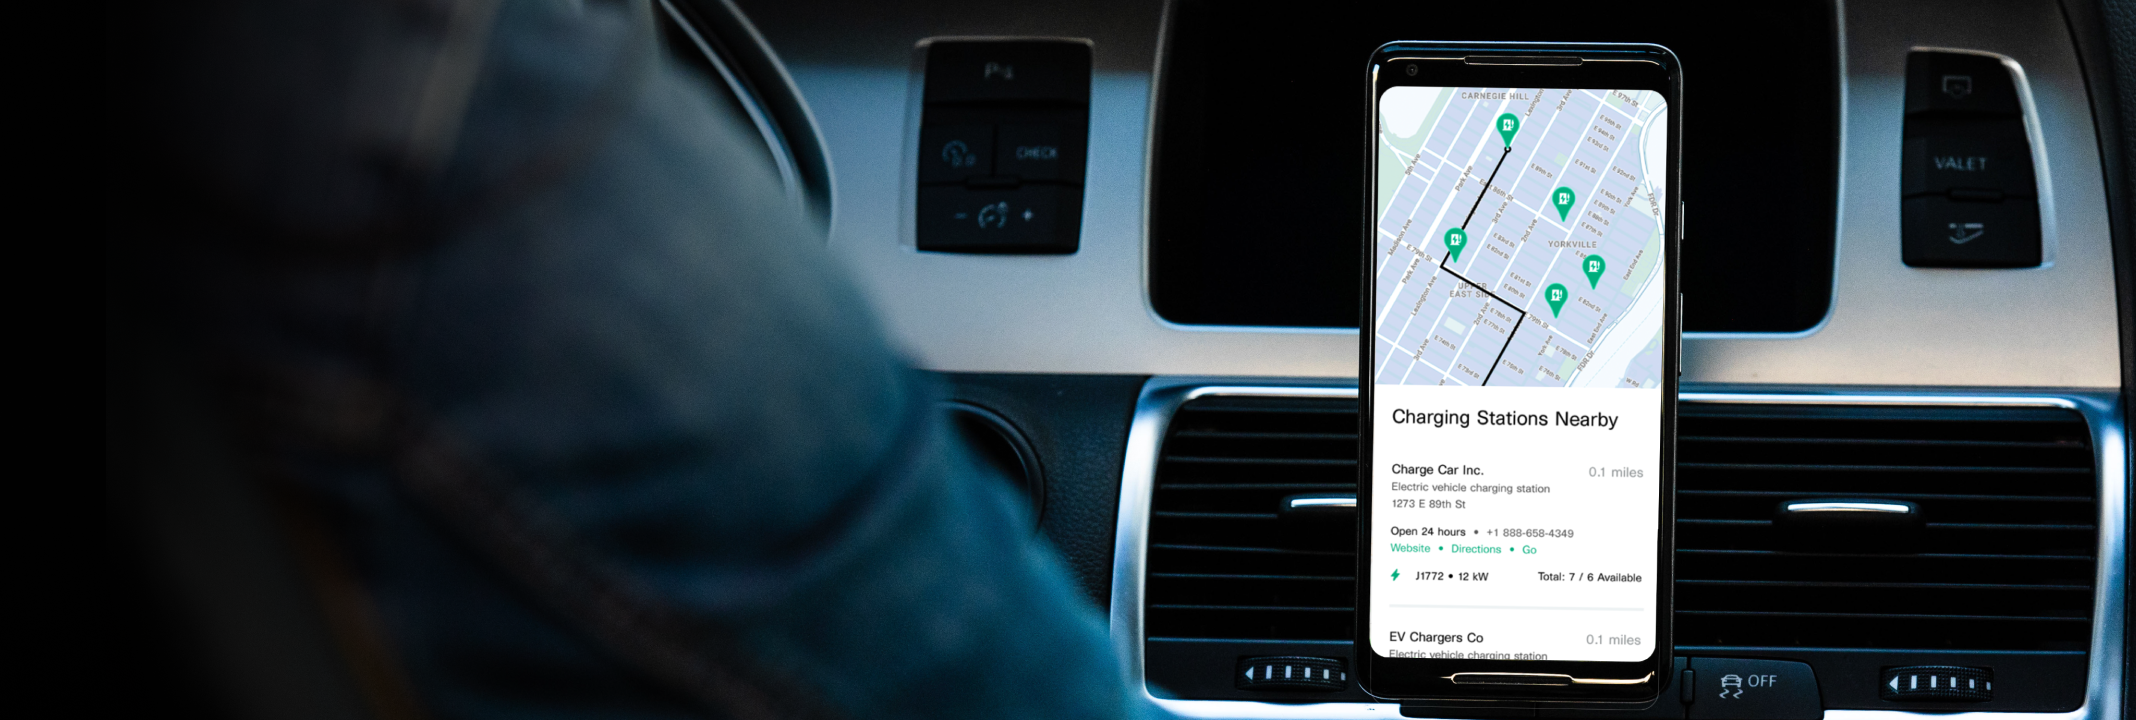 Ein Fahrer erhält auf seinem Smartphone Informationen zu Ladestationen in der Nähe